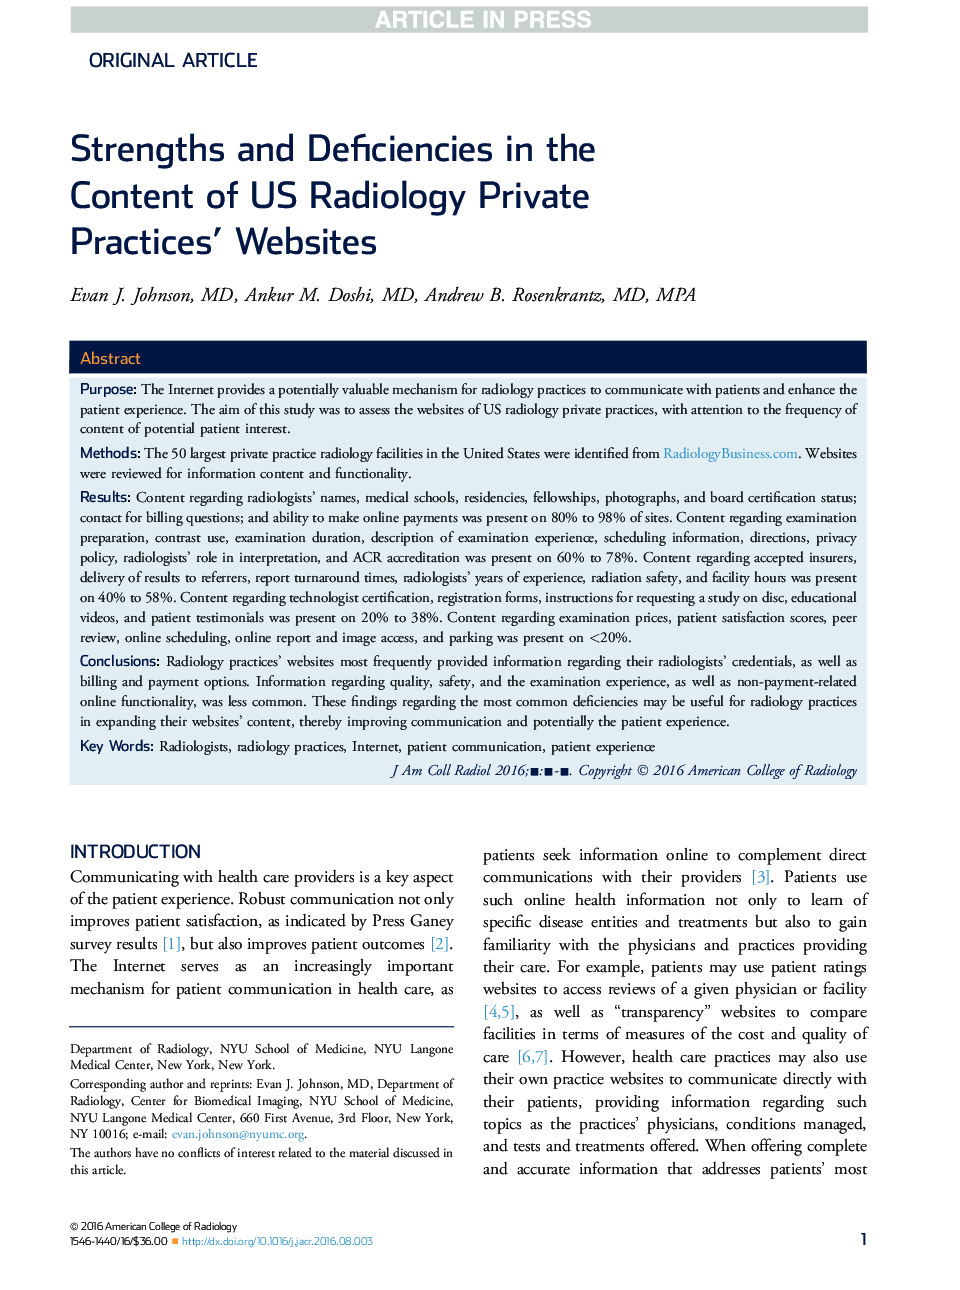 اثرات و ضعف های موجود در محتویات خصوصیات رادیولوژی ایالات متحده وب سایت ها 